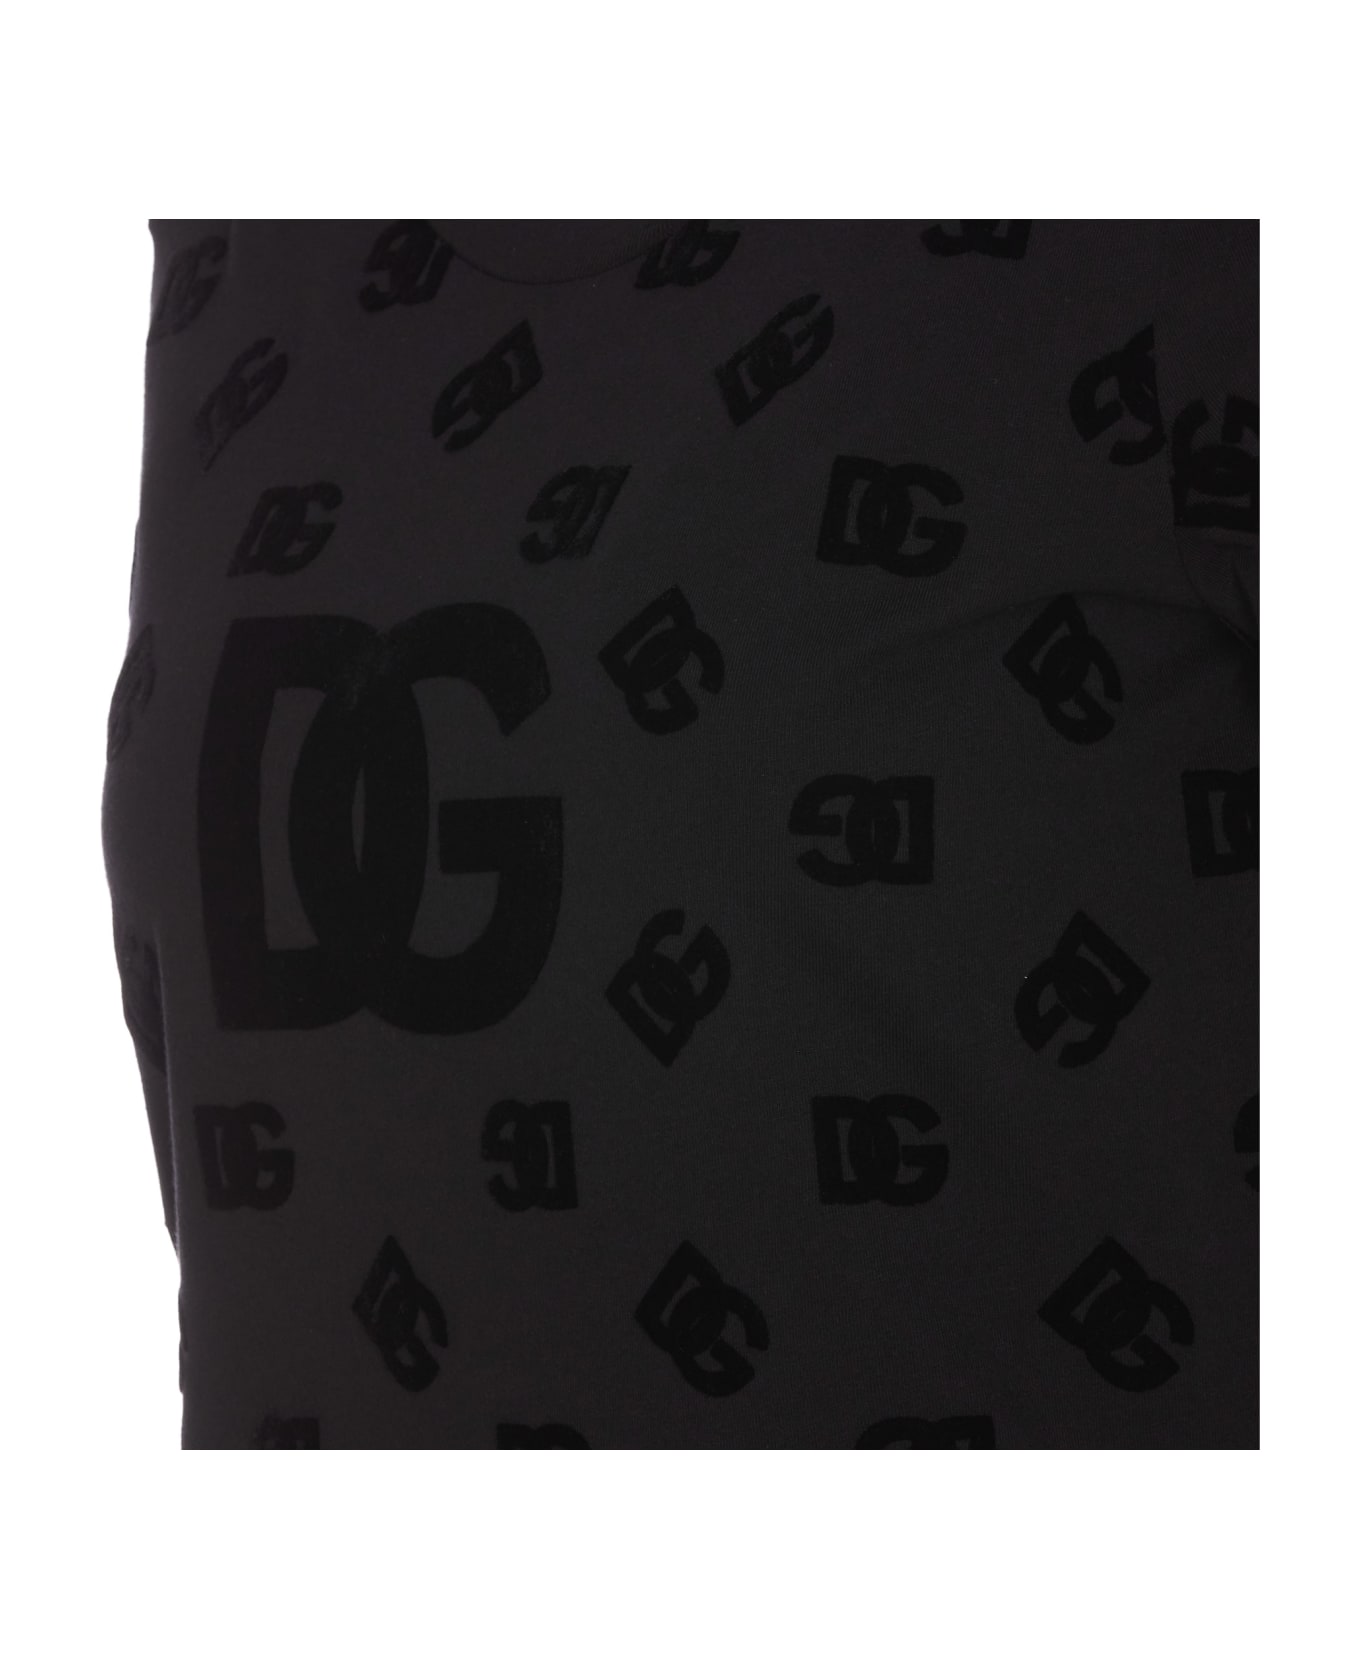 Dolce & Gabbana All Over Flocked Dg Logo T-shirt